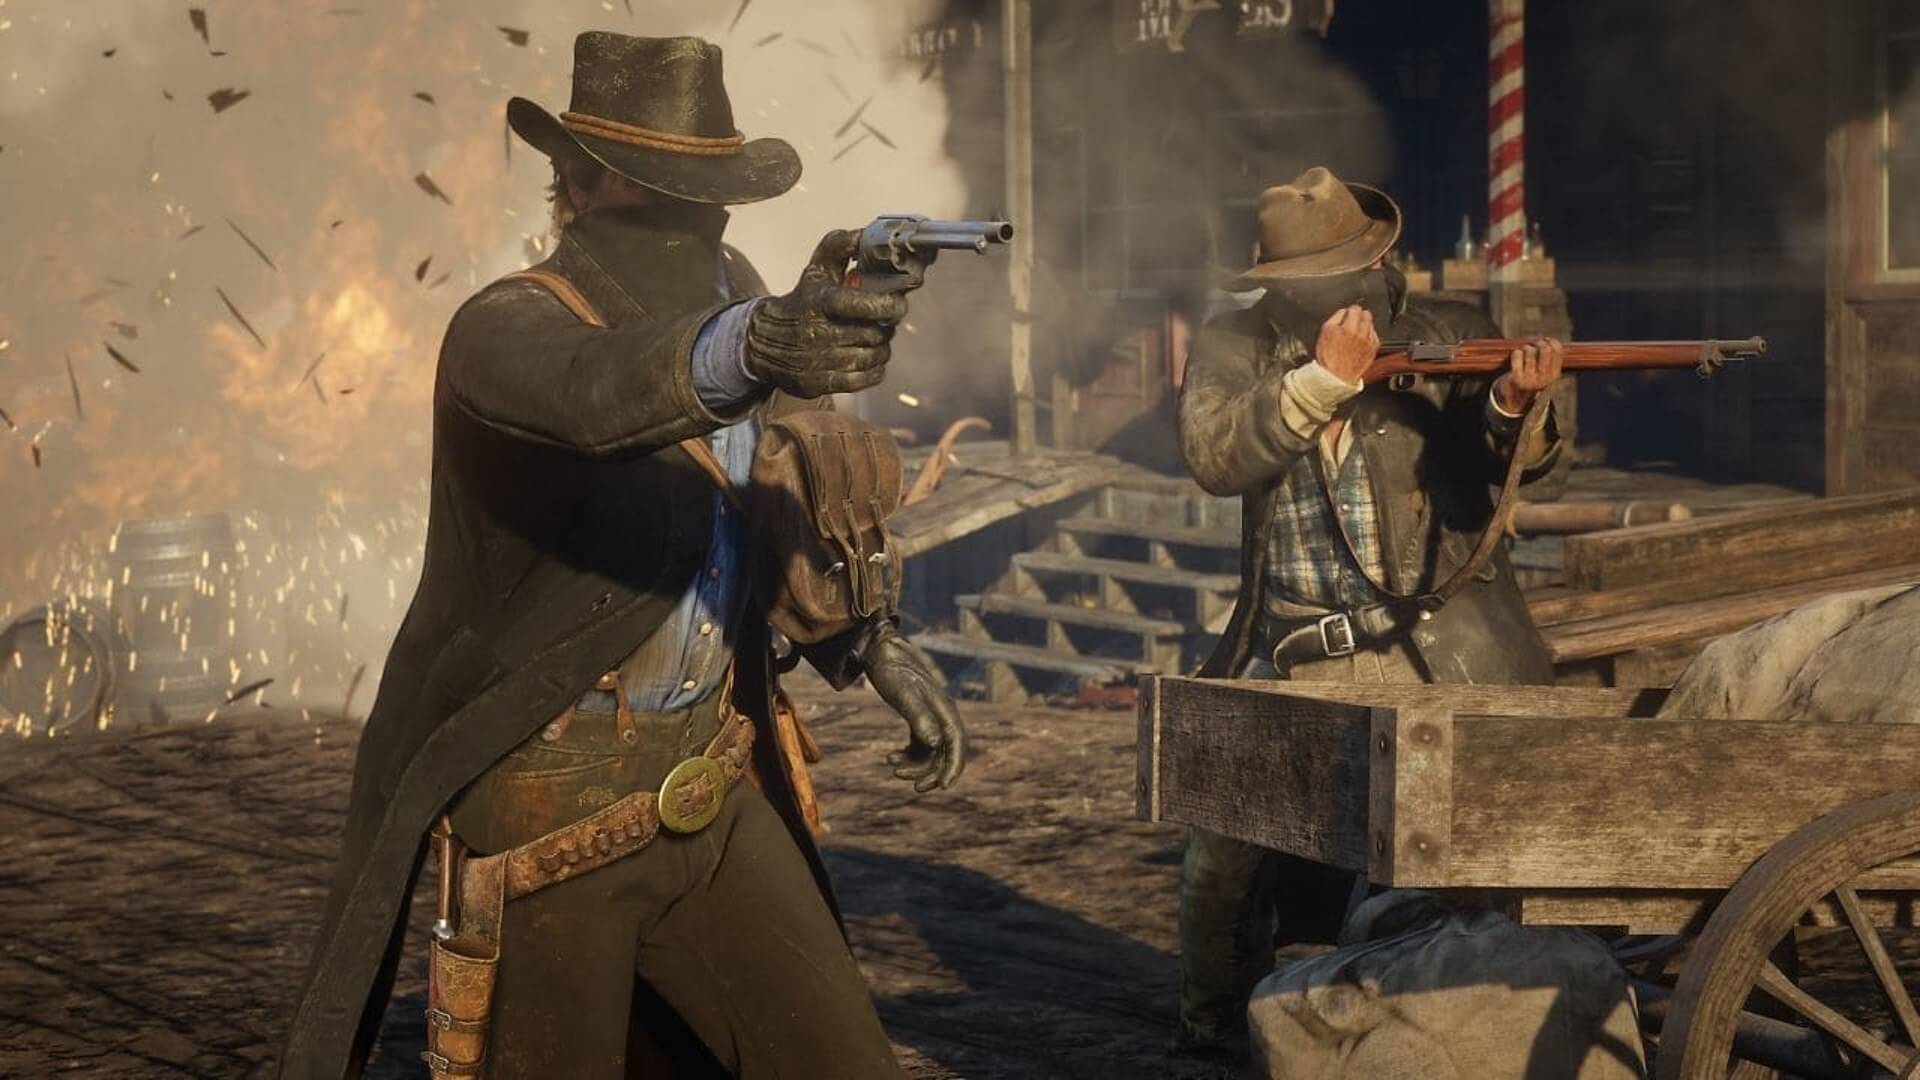 lærer Hover færge Red Dead Redemption 2 comes to PC on November 5 | TechSpot